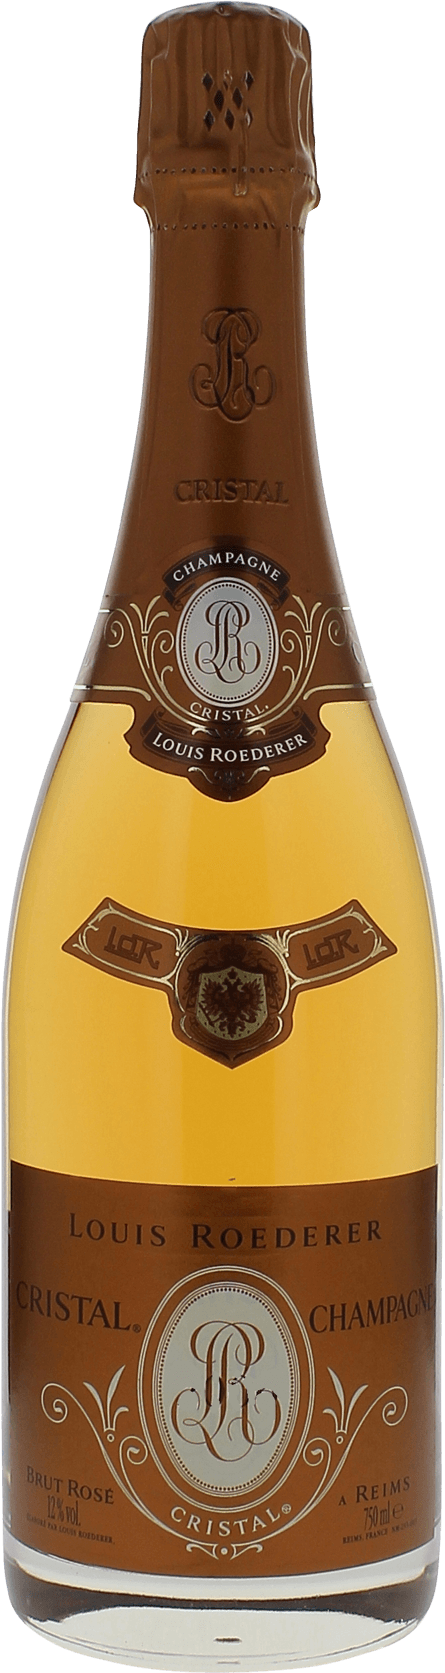 Cristal roederer ros 2005  Roederer, Champagne